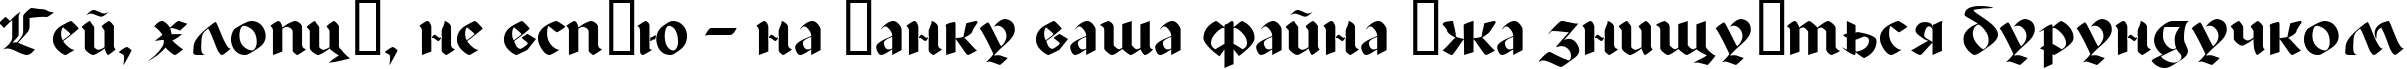 Пример написания шрифтом Paladin текста на украинском